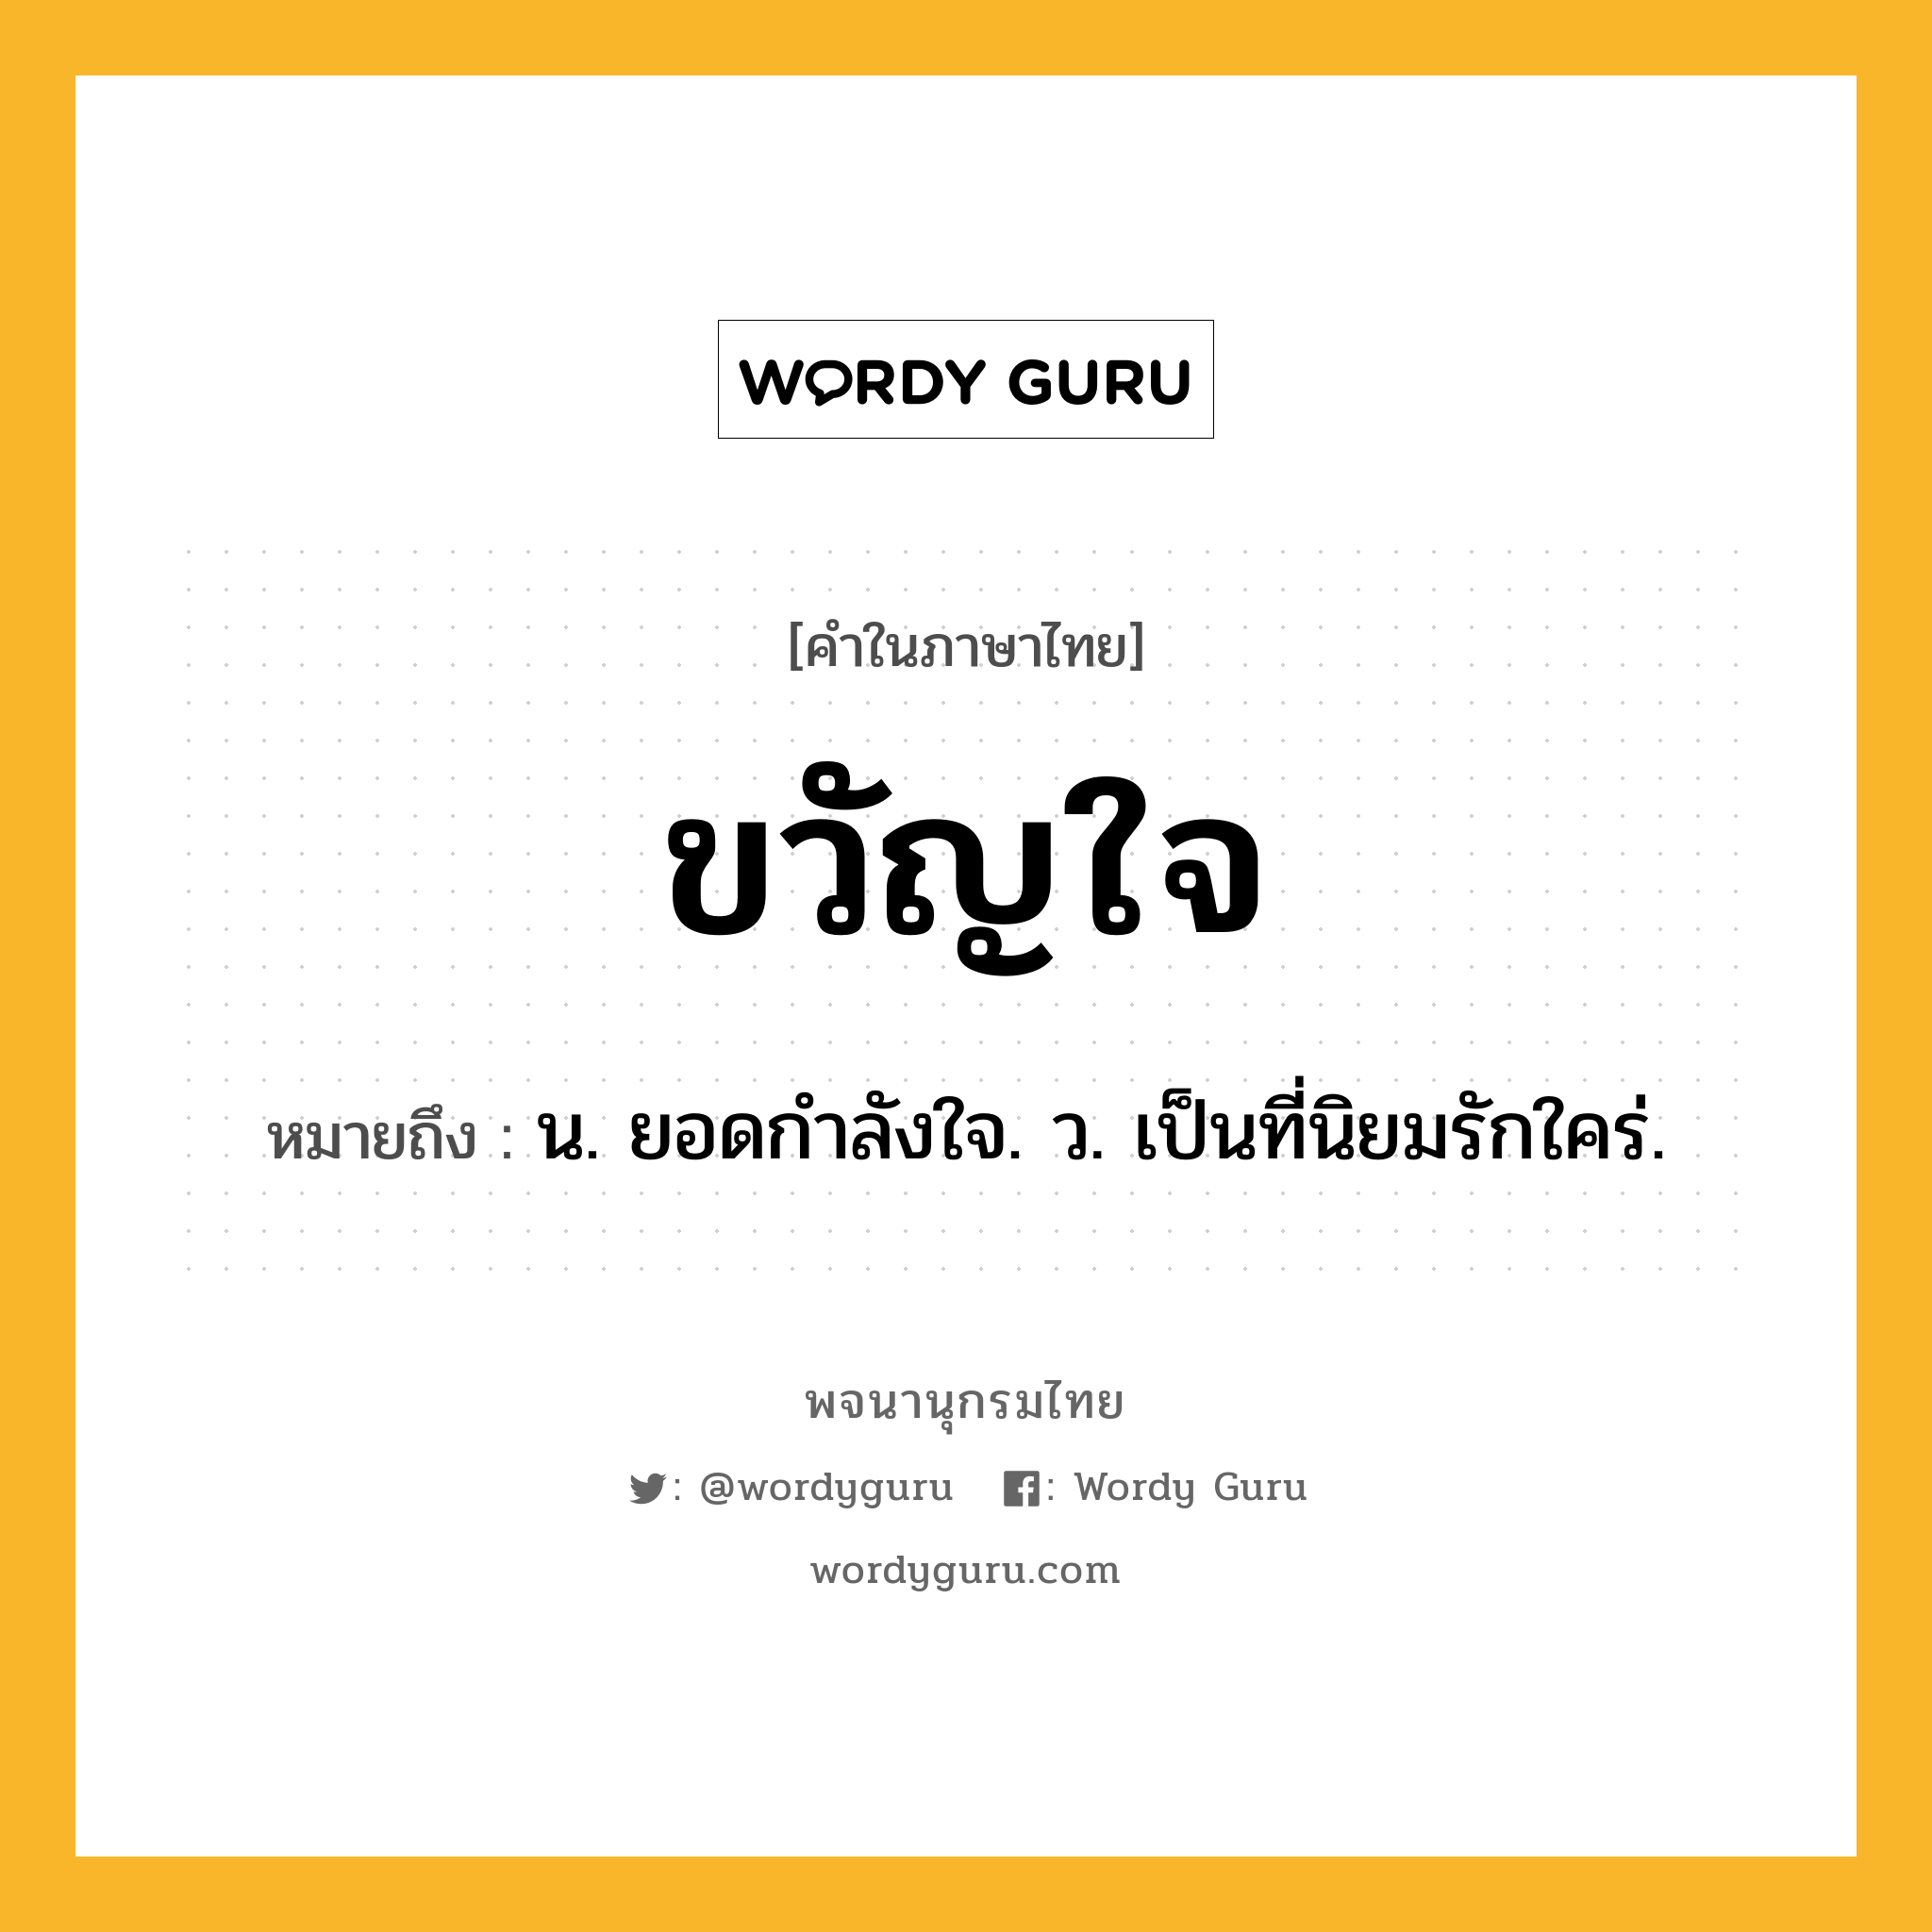 ขวัญใจ ความหมาย หมายถึงอะไร?, คำในภาษาไทย ขวัญใจ หมายถึง น. ยอดกําลังใจ. ว. เป็นที่นิยมรักใคร่.